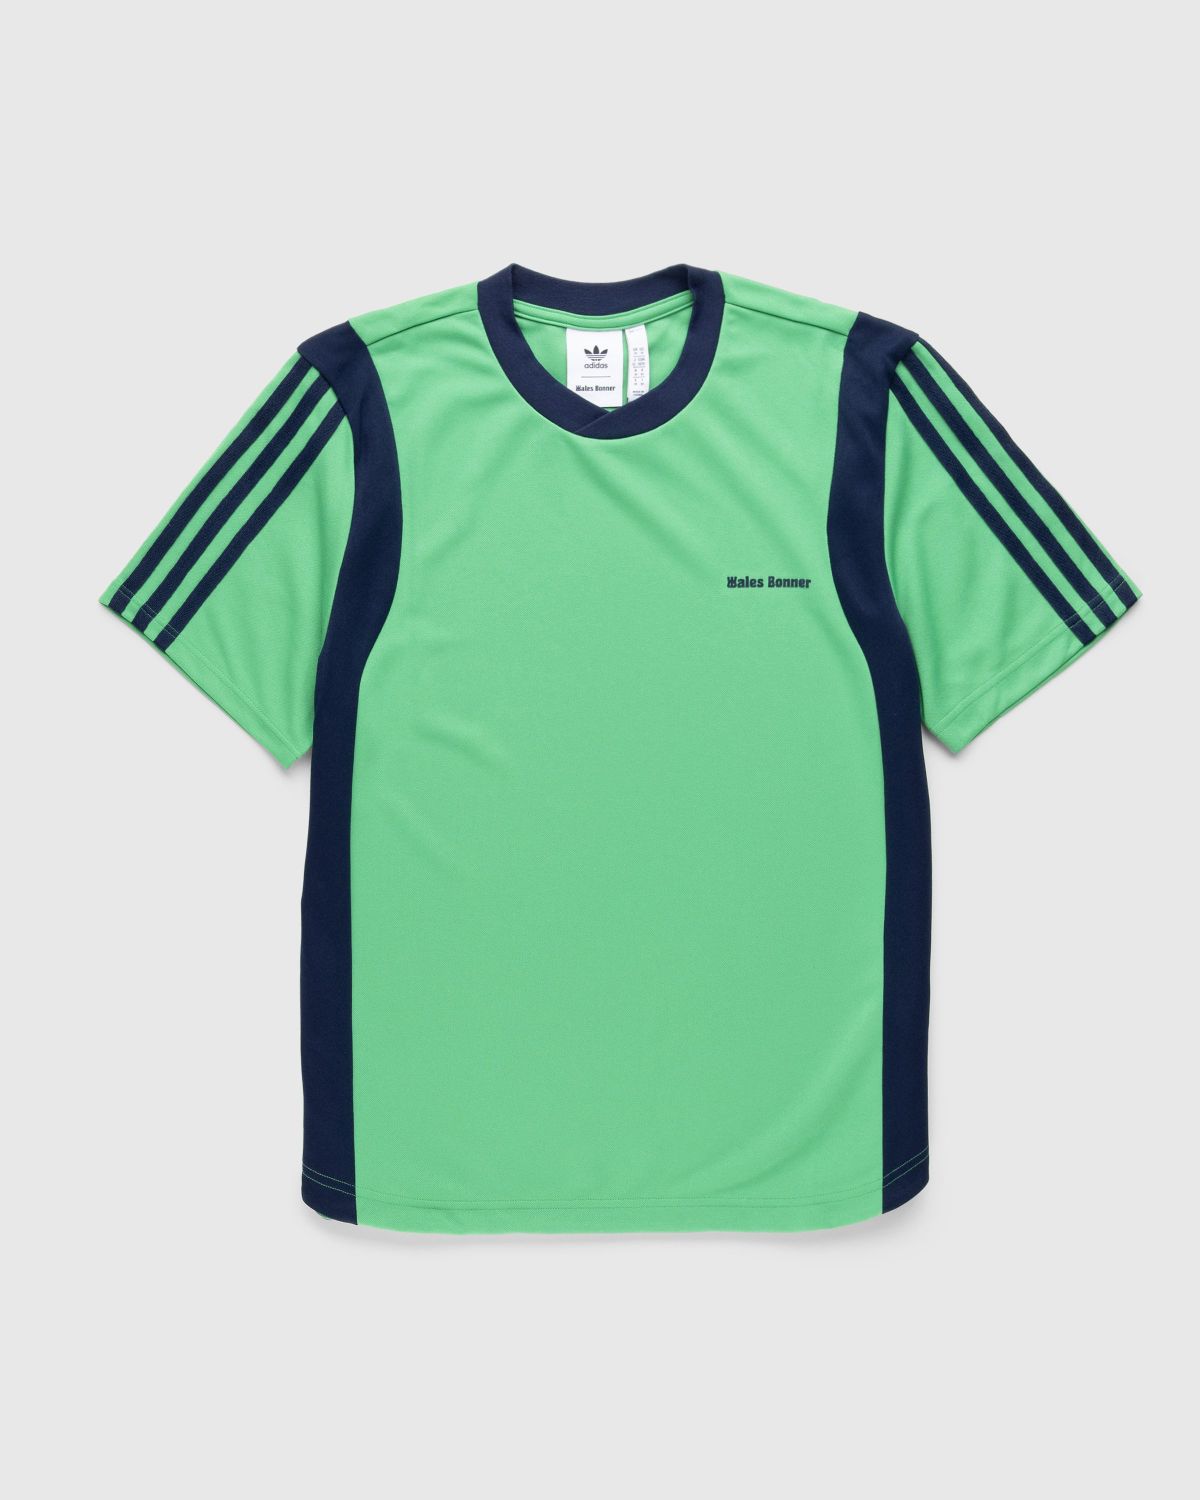 Adidas x Wales Bonner – Football Shirt Vivid Green - Longsleeves - Green - Image 1